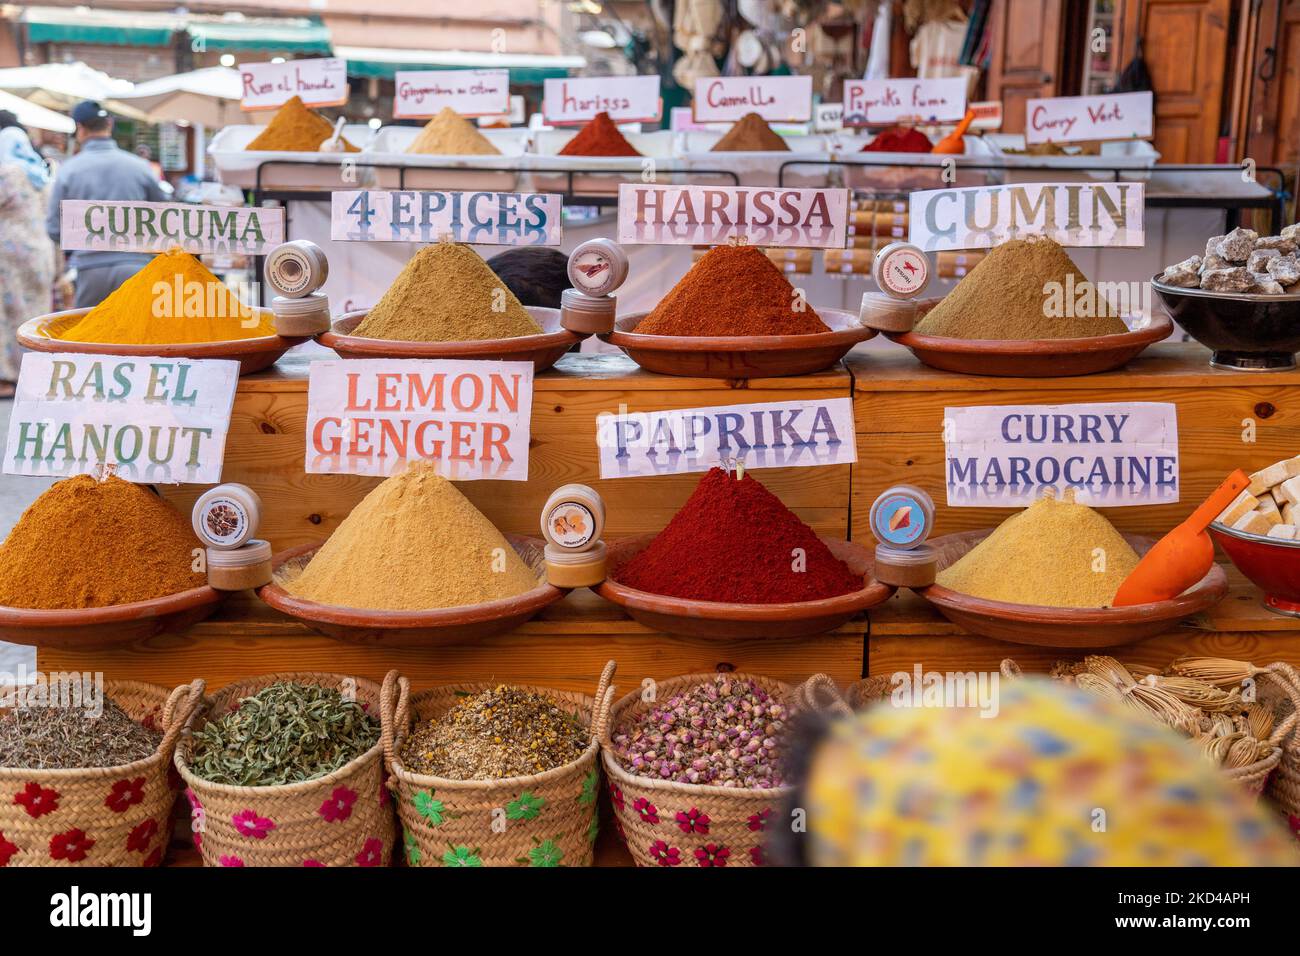 MARRAKECH, MAROCCO - 3rd NOV 22: Spezie, erbe e altri prodotti in un negozio di mercato nella Medina o Marrakech in Marocco. La gente può essere vista vicino alla sta Foto Stock